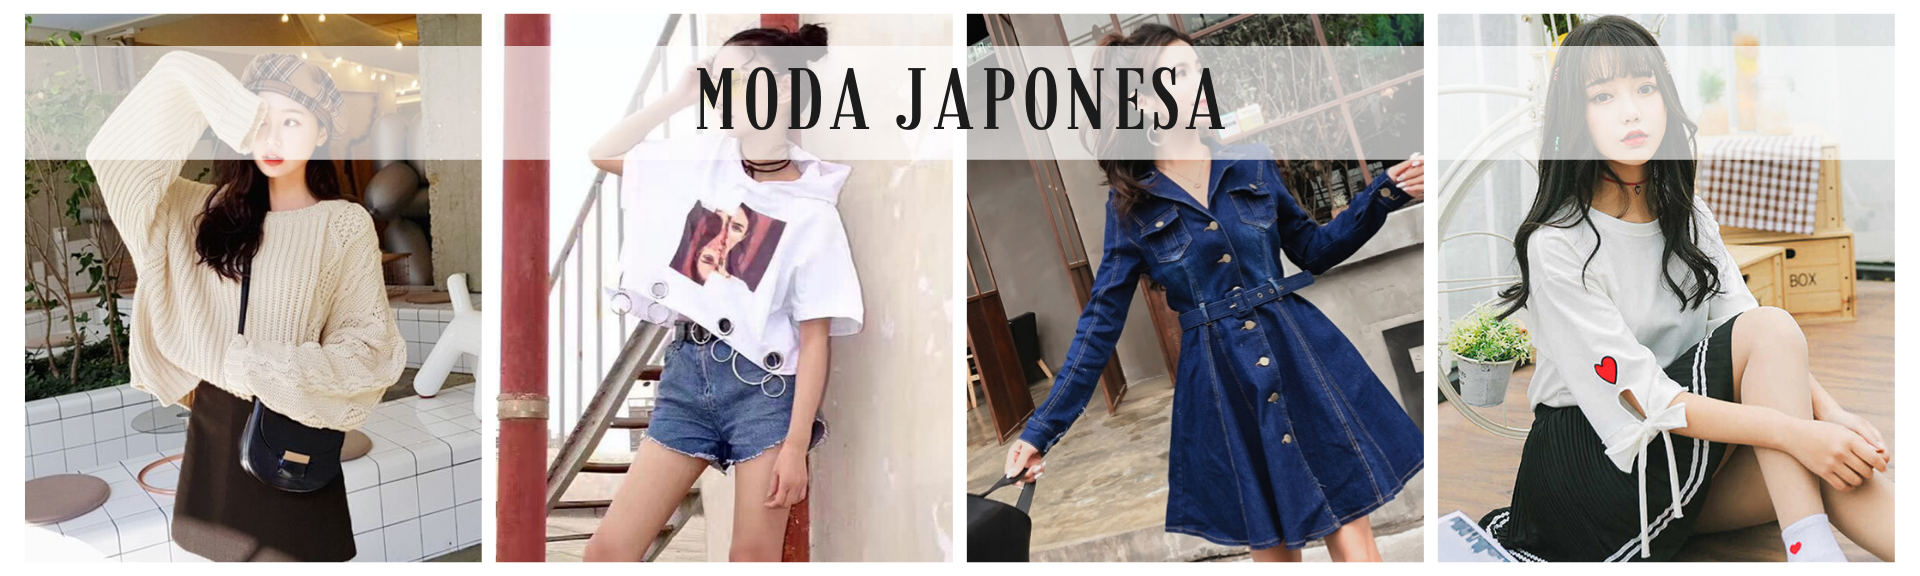 Ropa y Moda de Japón - Fácil y Seguro con ZenMarket: Compras a Japón